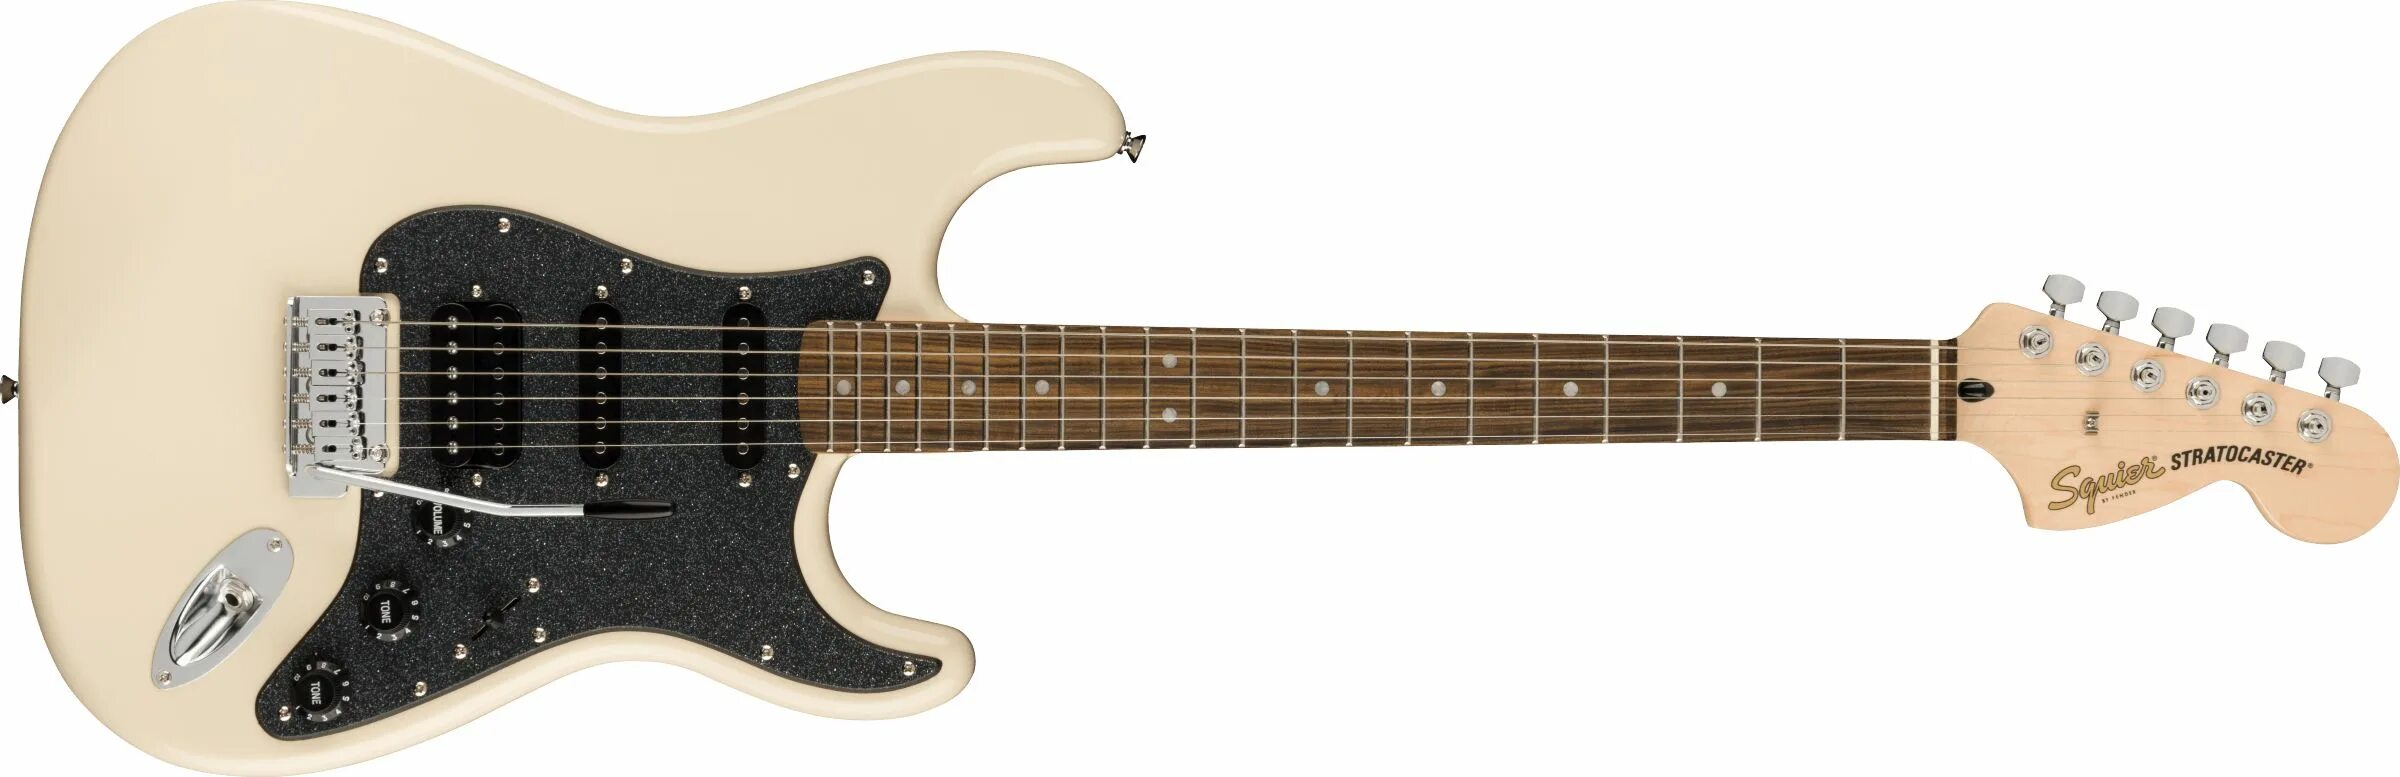 Электрогитара Fender Squier Stratocaster. Ltd SN-200ht SW. Электрогитара Fender Squier Classic Vibe '70s. Электрогитара Squier Contemporary Stratocaster HSS.